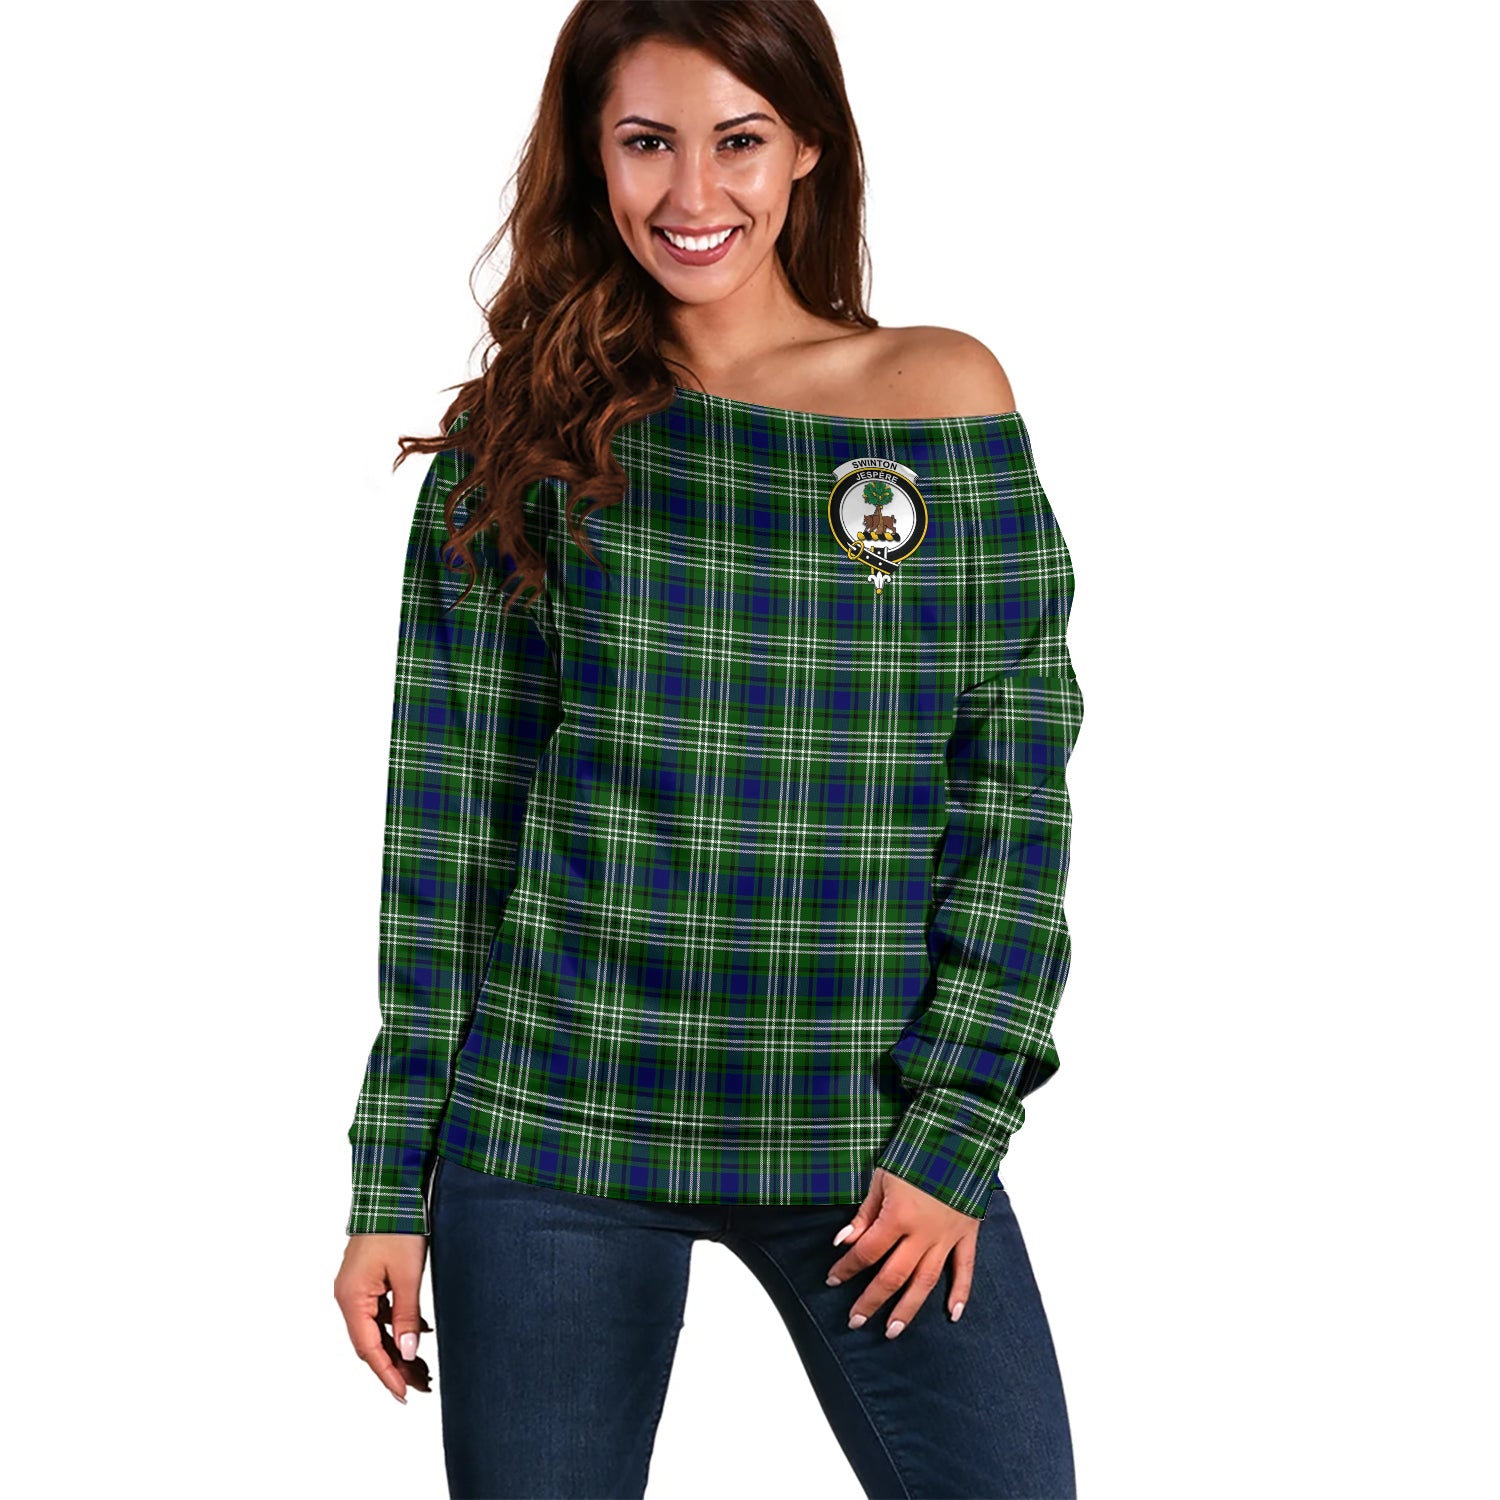 swinton-clan-tartan-off-shoulder-sweater-family-crest-sweater-for-women